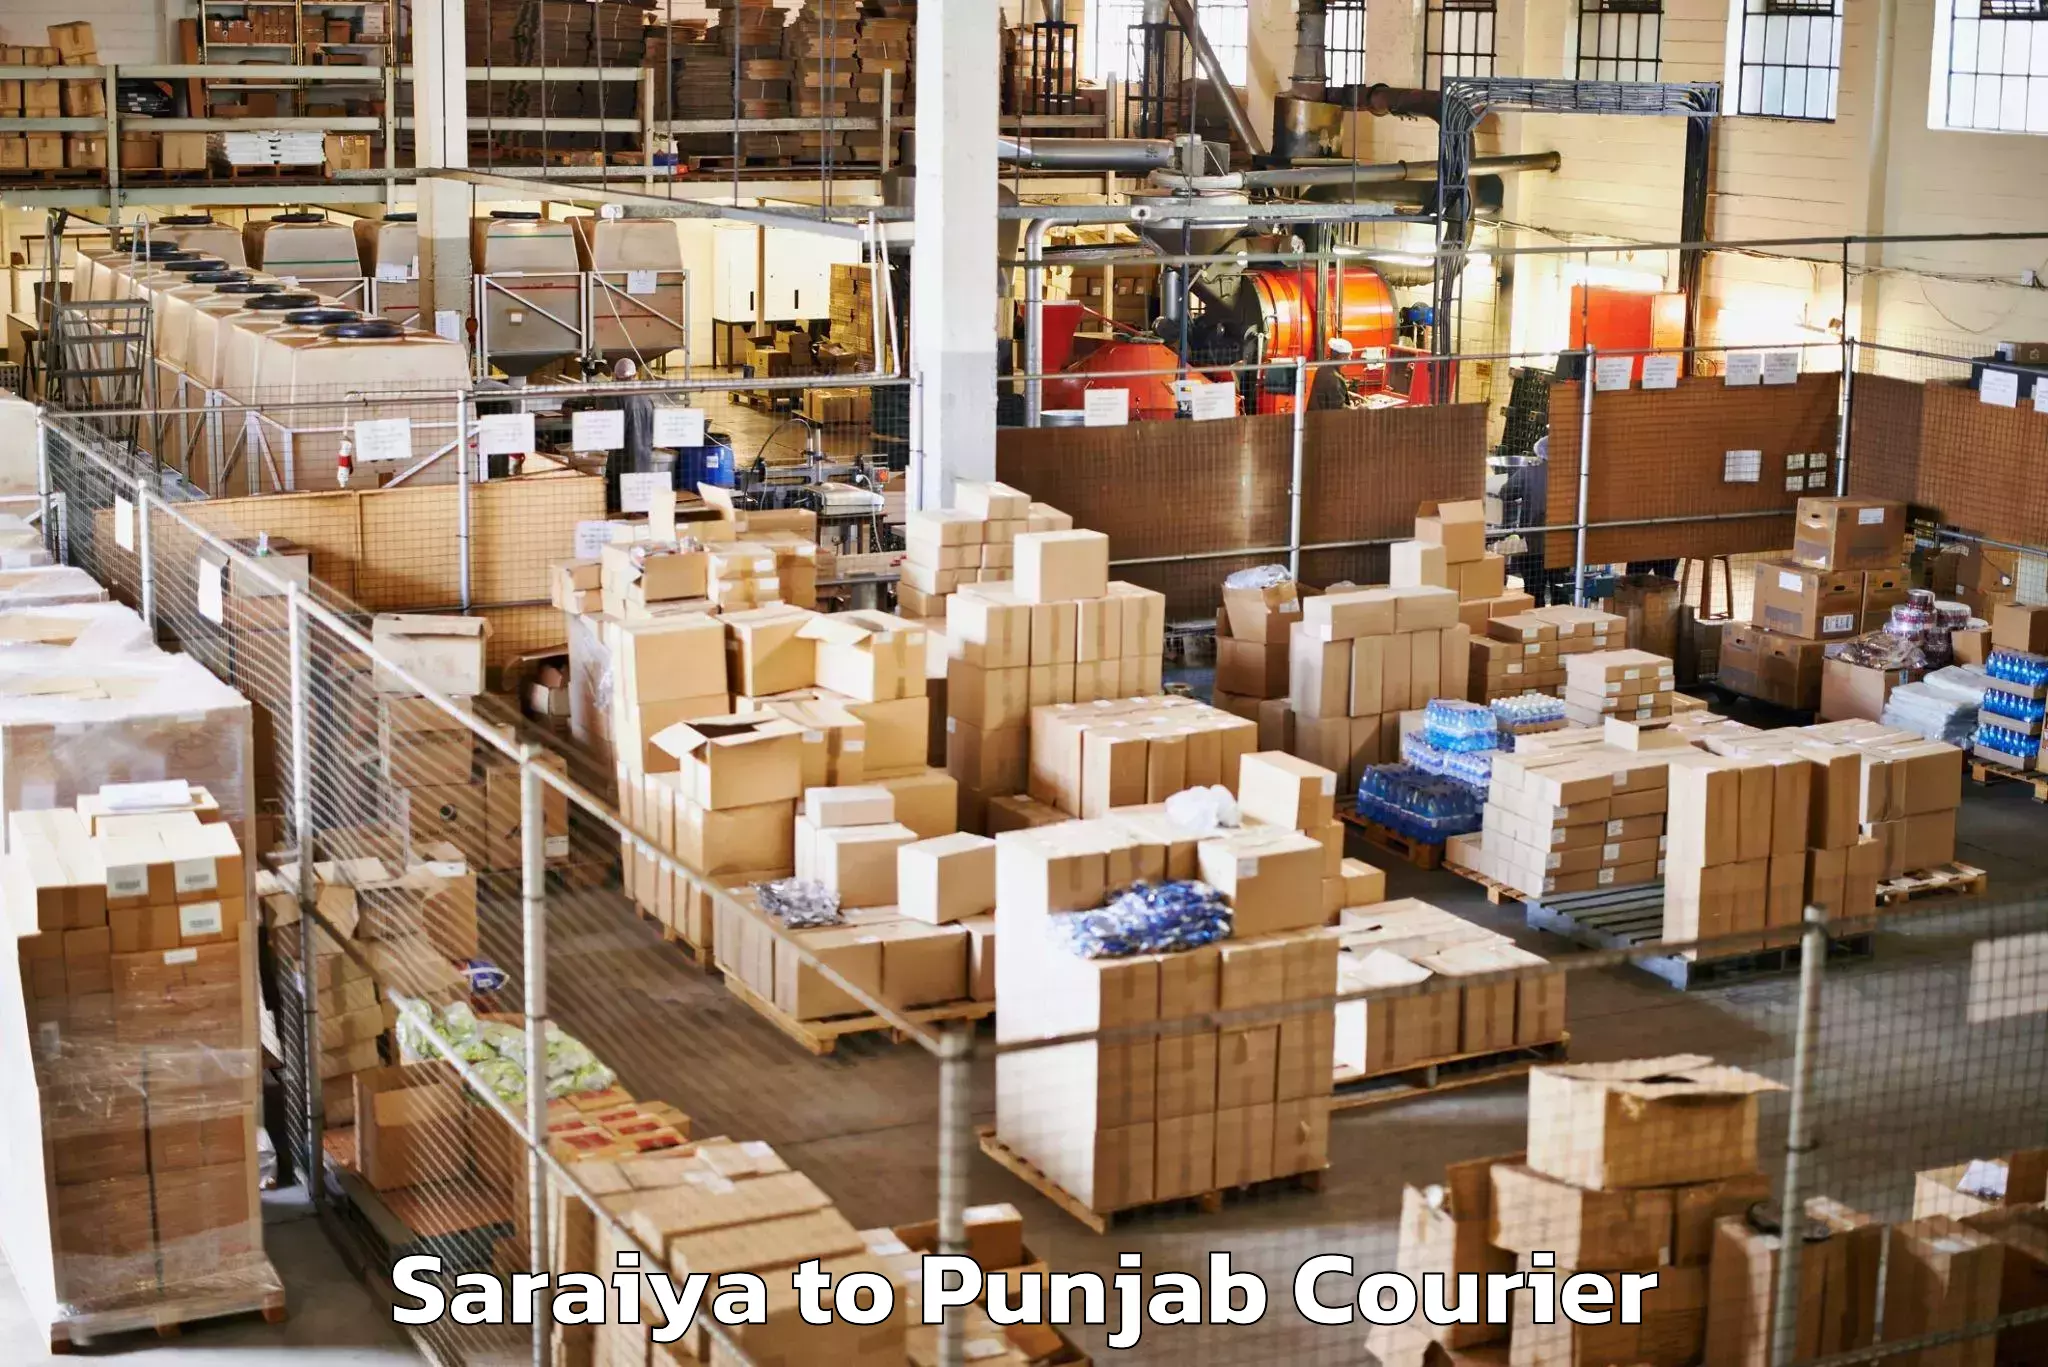 Luggage delivery providers Saraiya to Central University of Punjab Bathinda